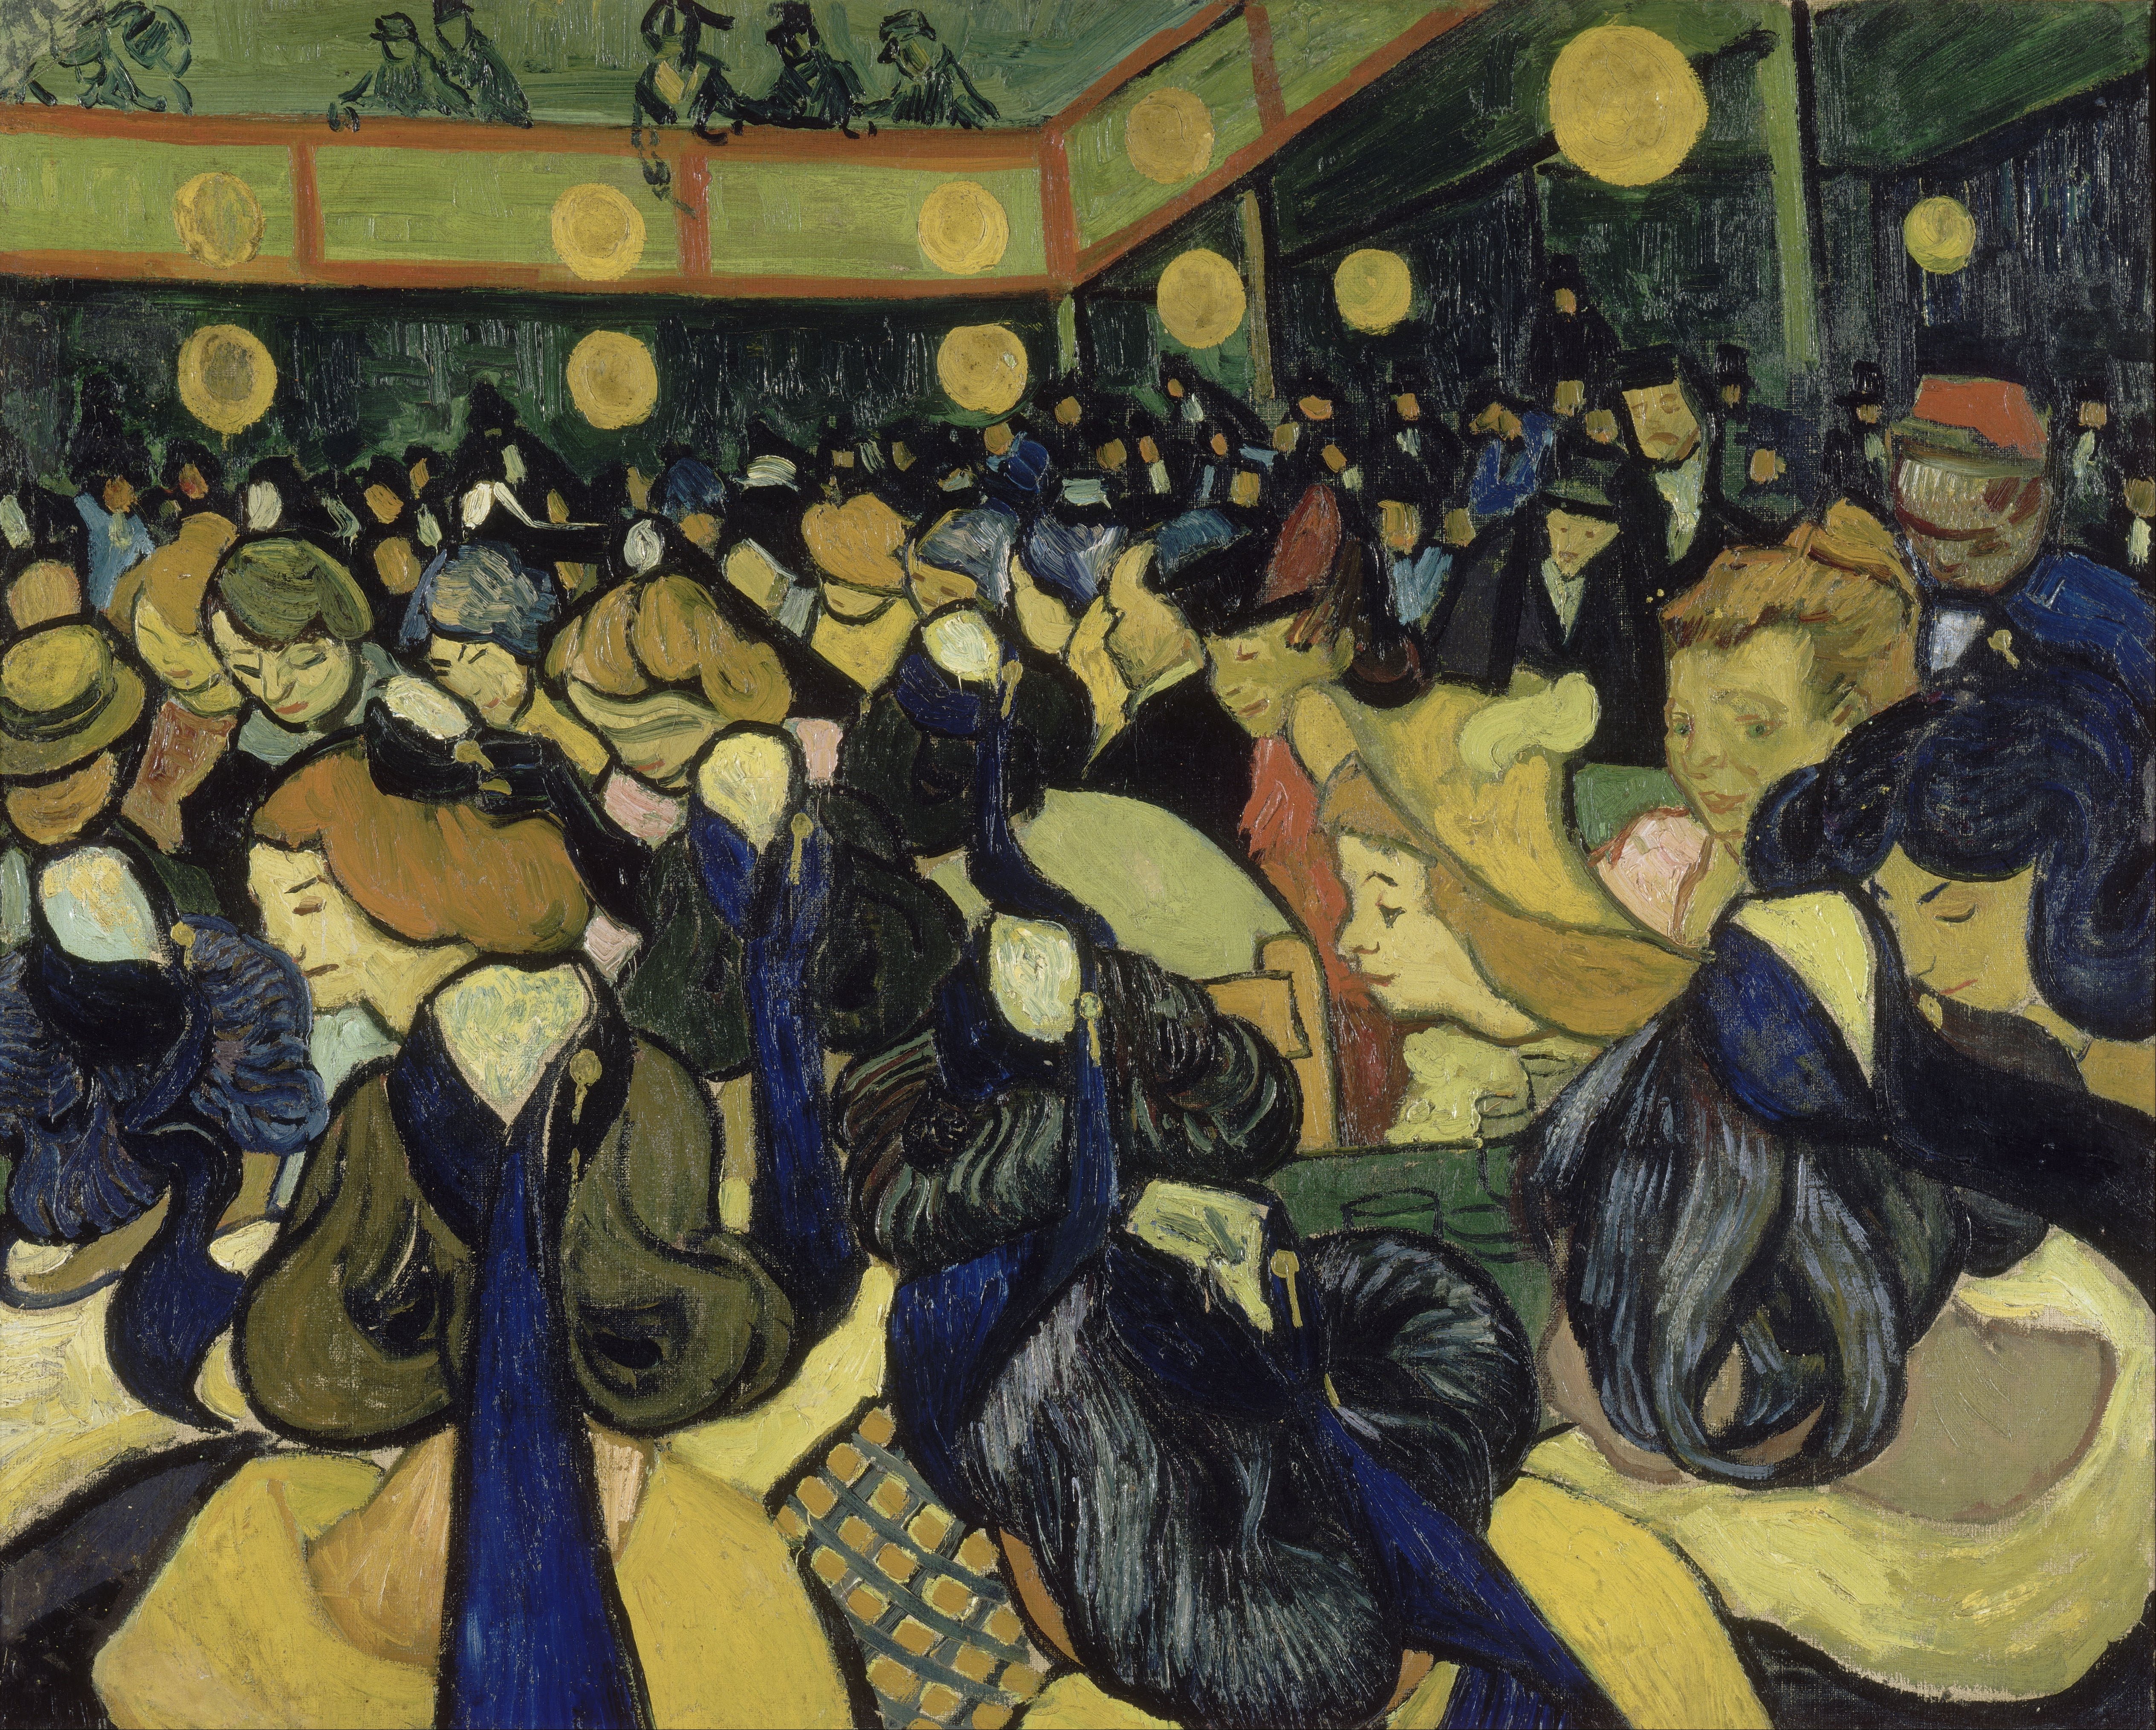 Die Tanzhalle in Arles by Vincent van Gogh - 1888 - 65 x 81 cm Musée d'Orsay